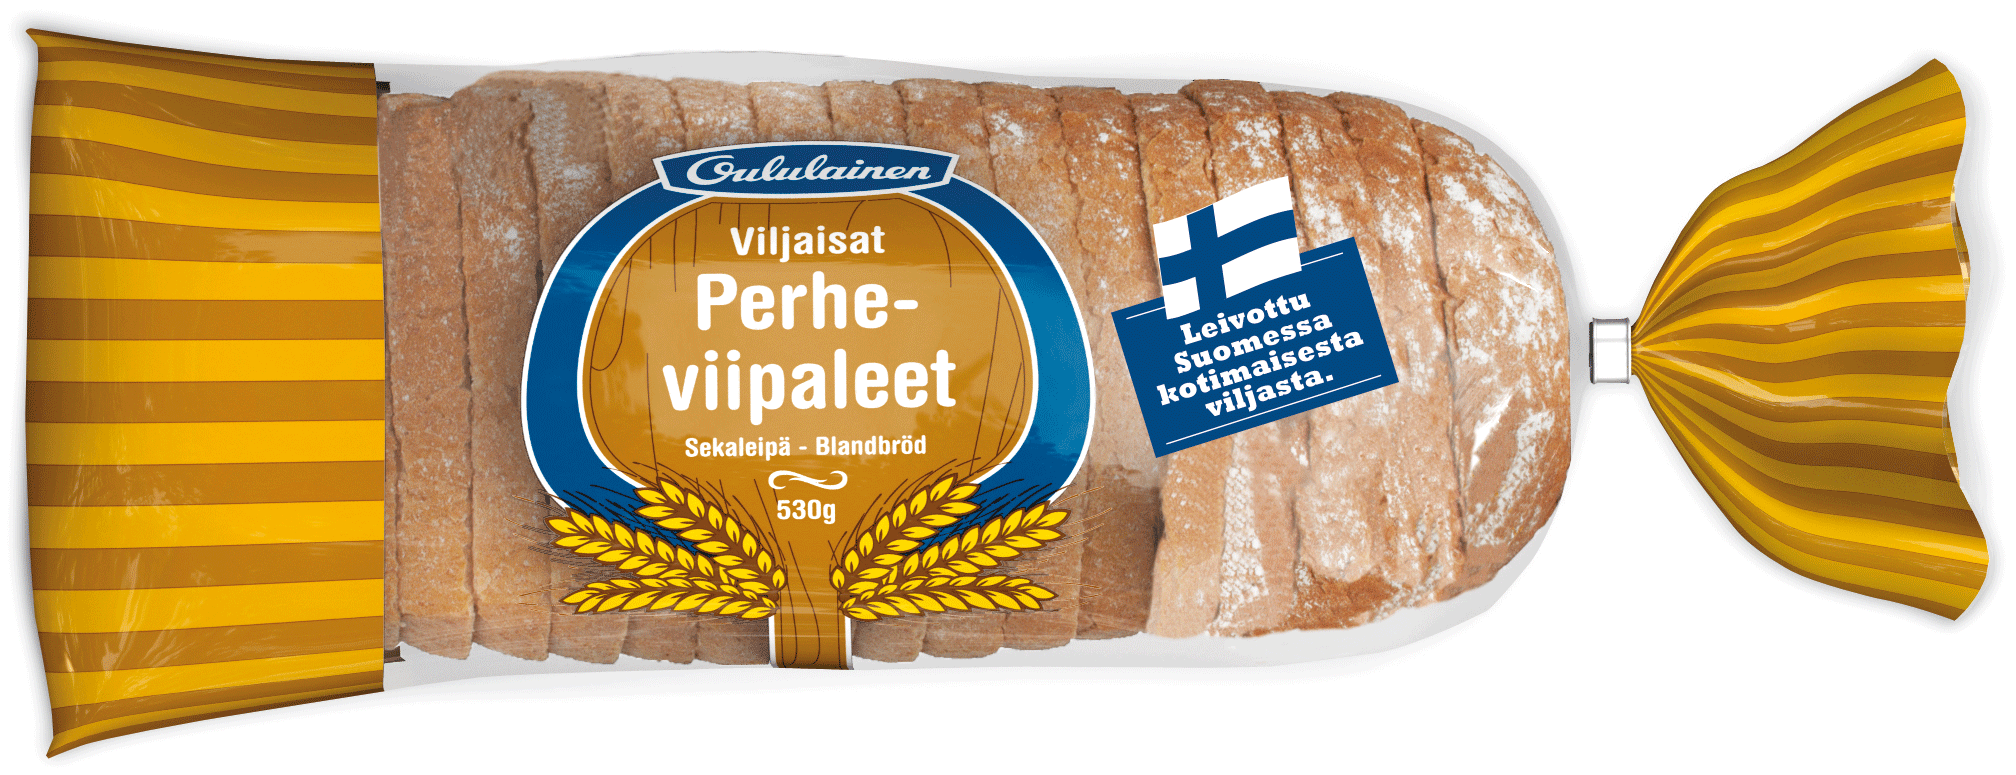 Oululainen Viljaisat Perheviipaleet 530g, sliced mixed loaf